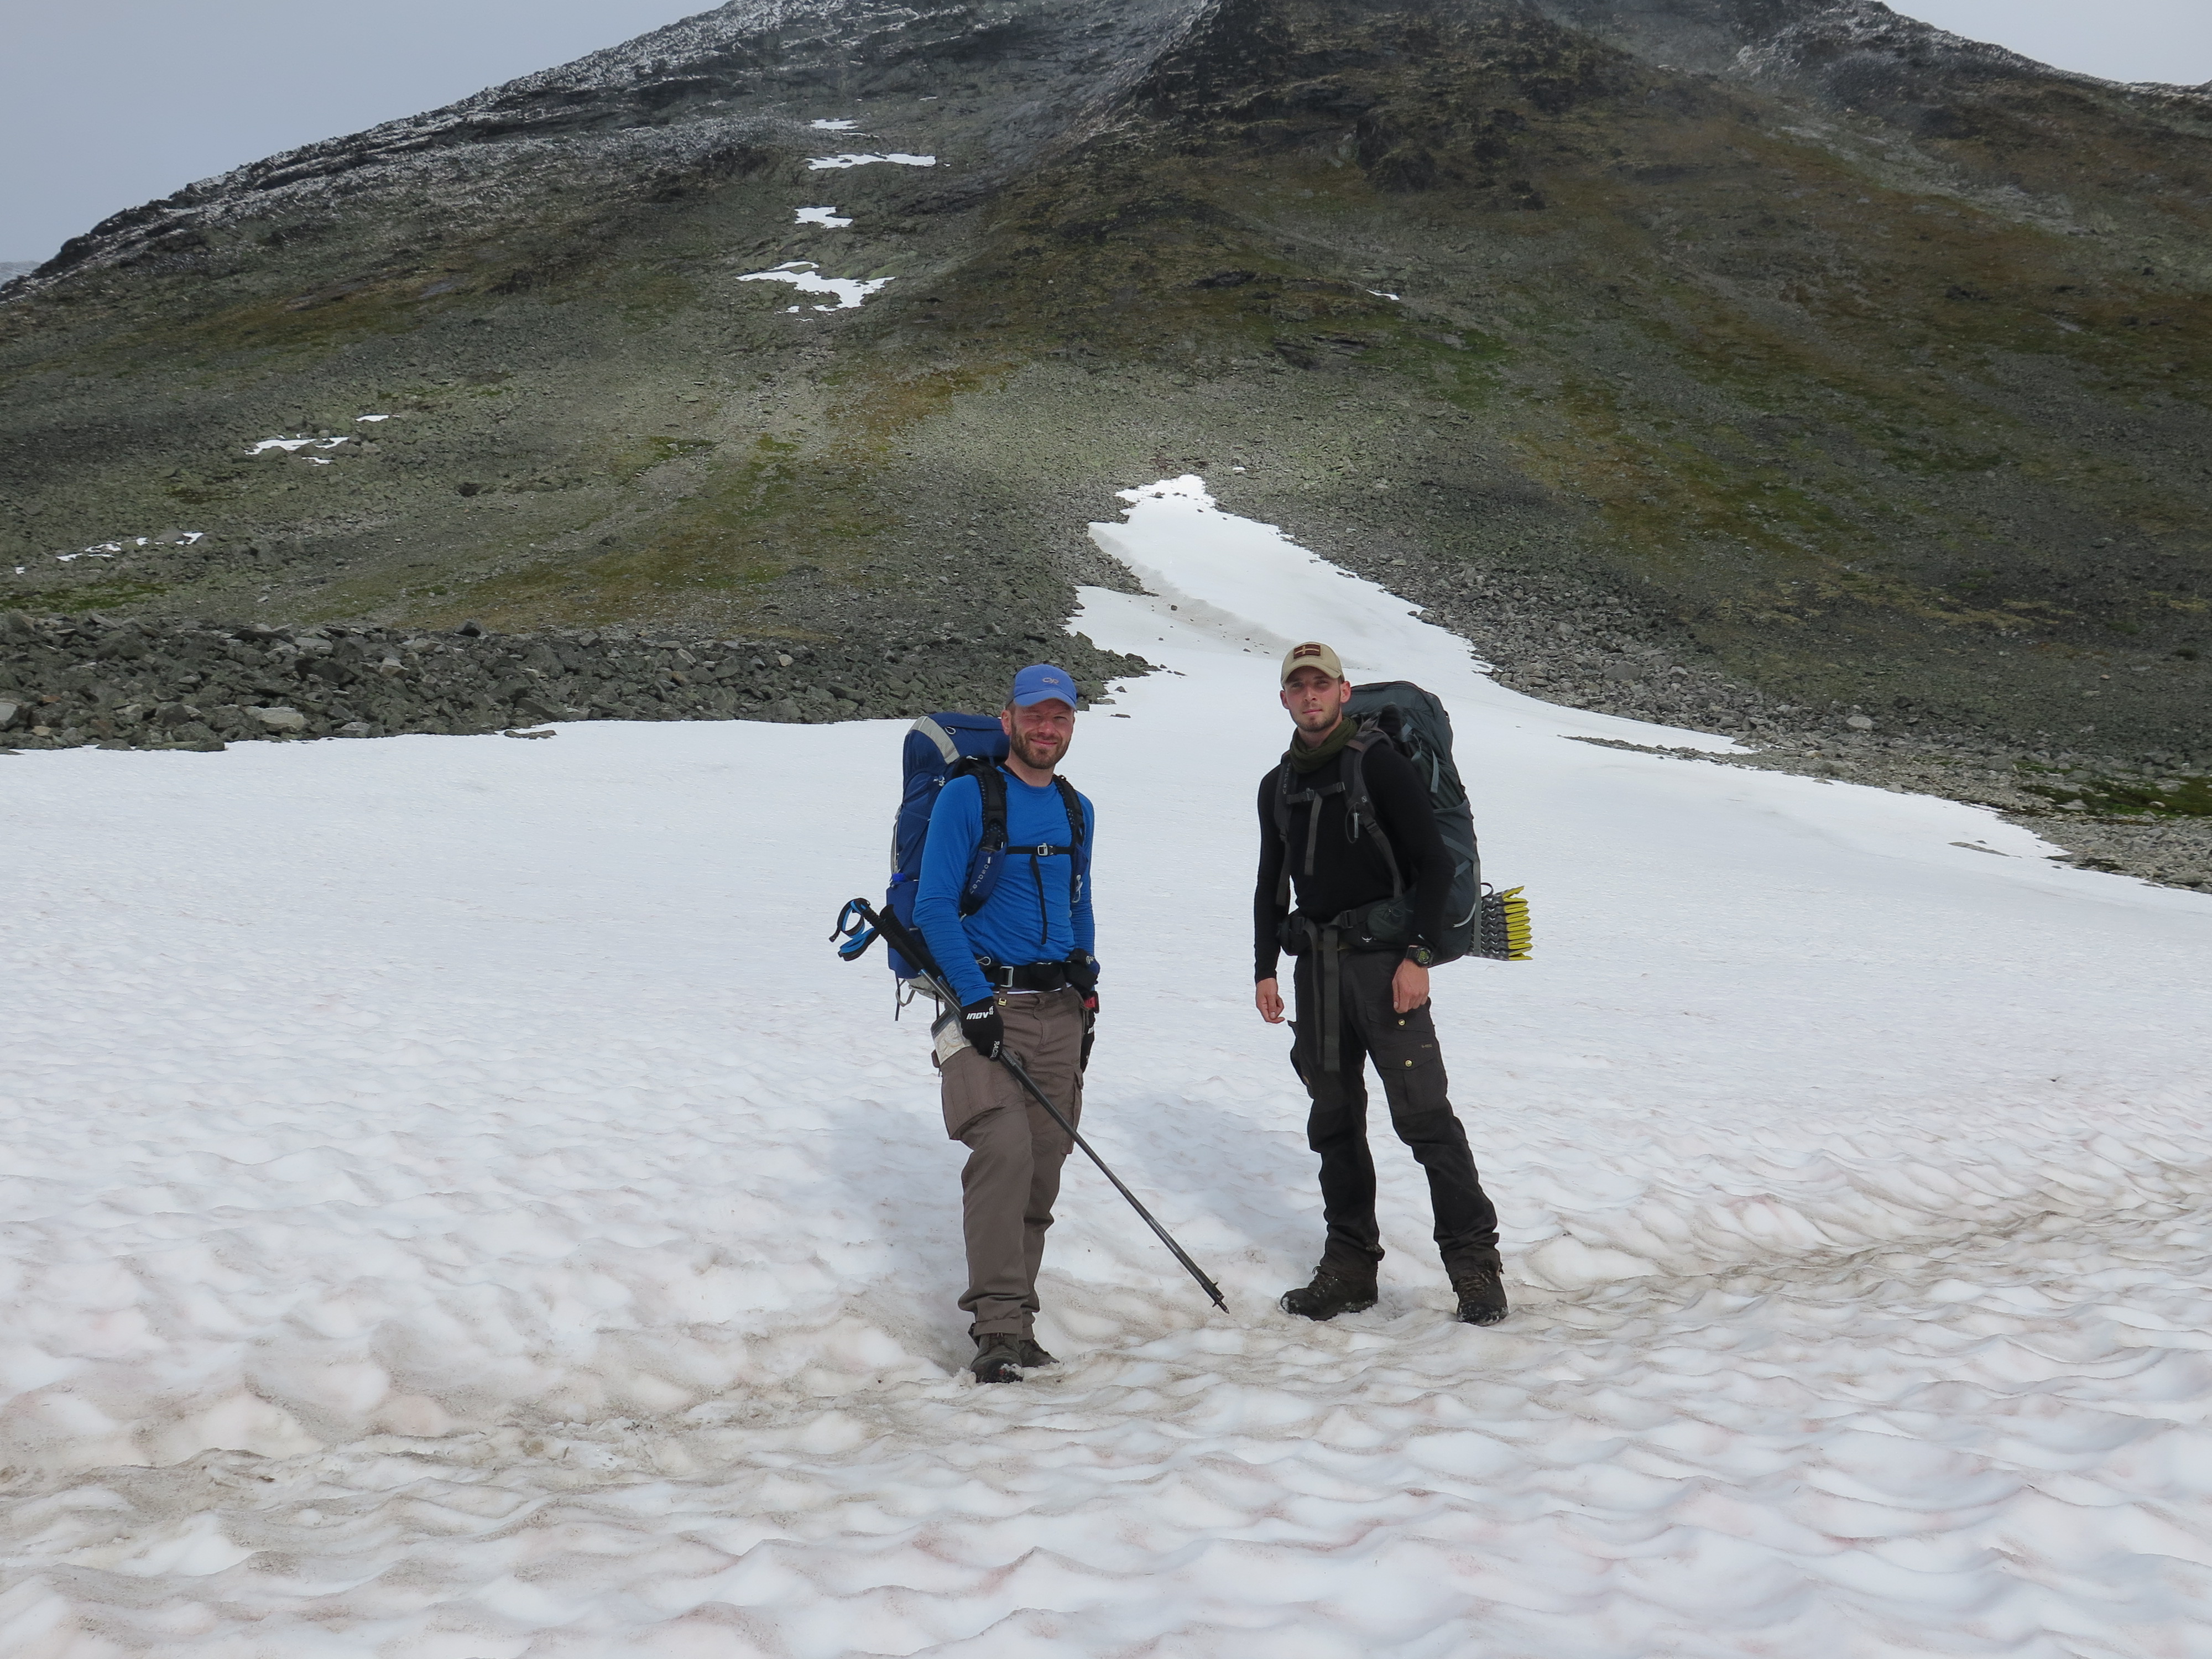 På vej over et snefelt på Jotunheimen, september 2015 Foto: Niels Overgaard Blok